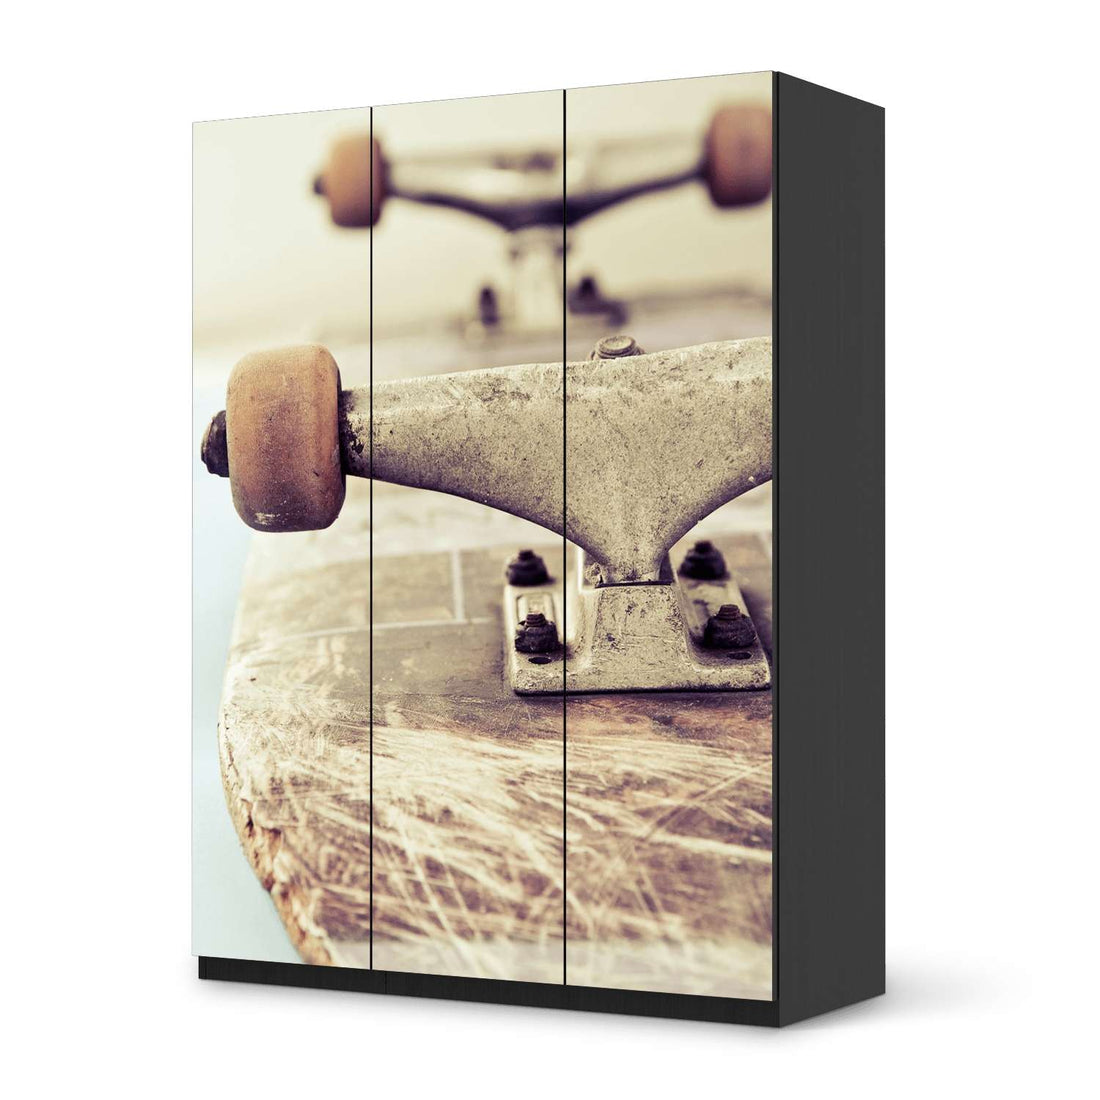 Folie für Möbel Skateboard - IKEA Pax Schrank 201 cm Höhe - 3 Türen - schwarz